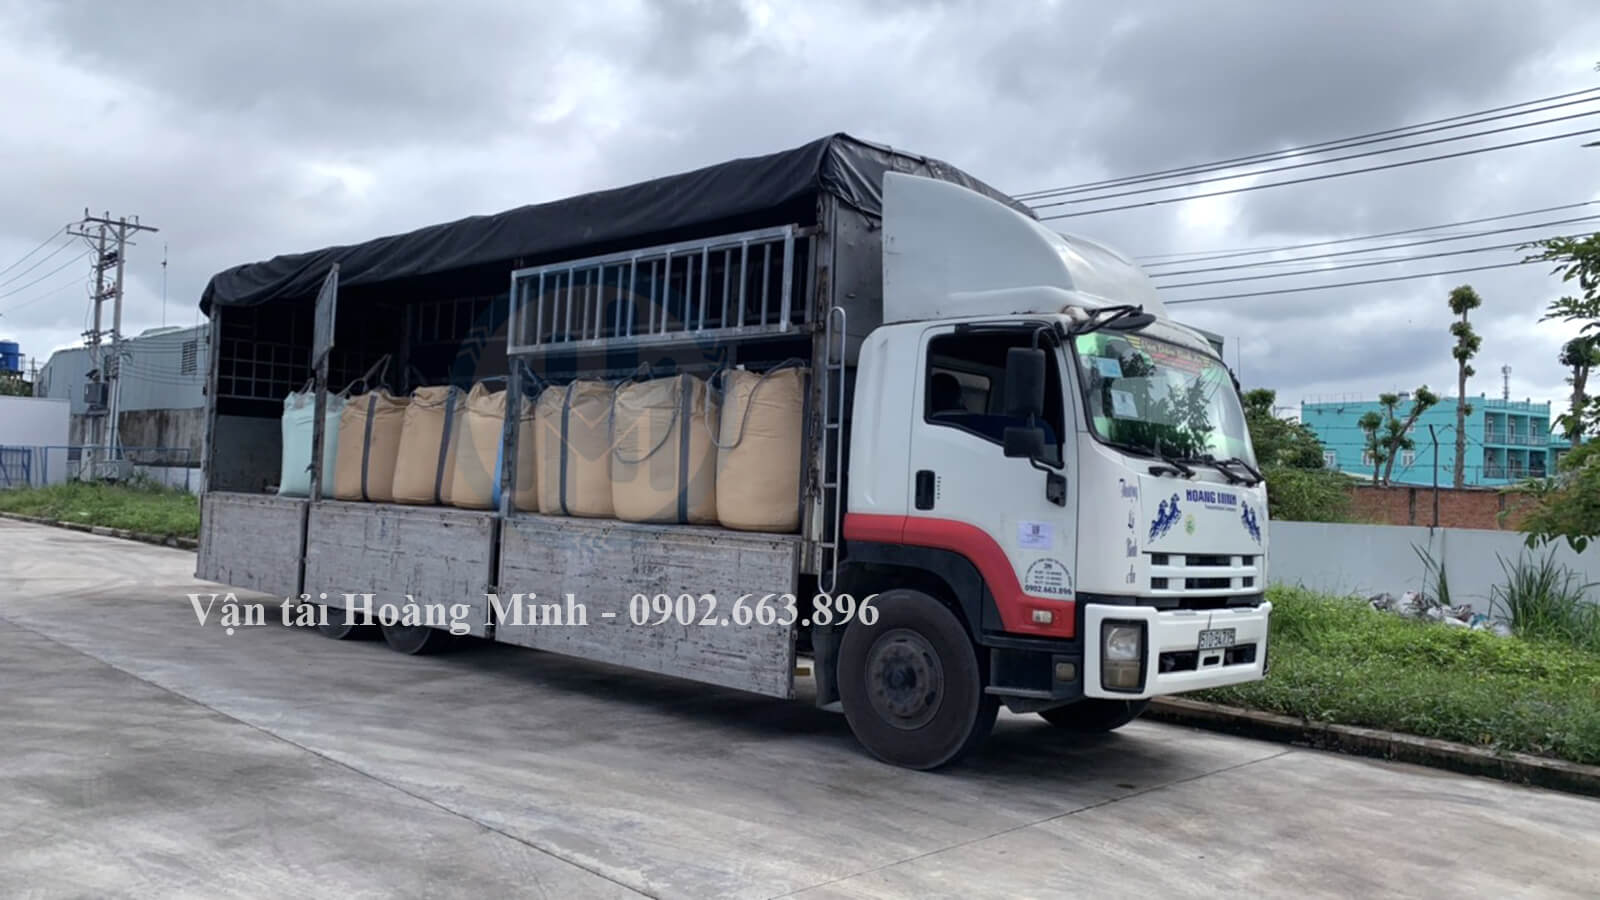 Hoàng Minh cho thuê xe tải chở hàng đi Tây Ninh